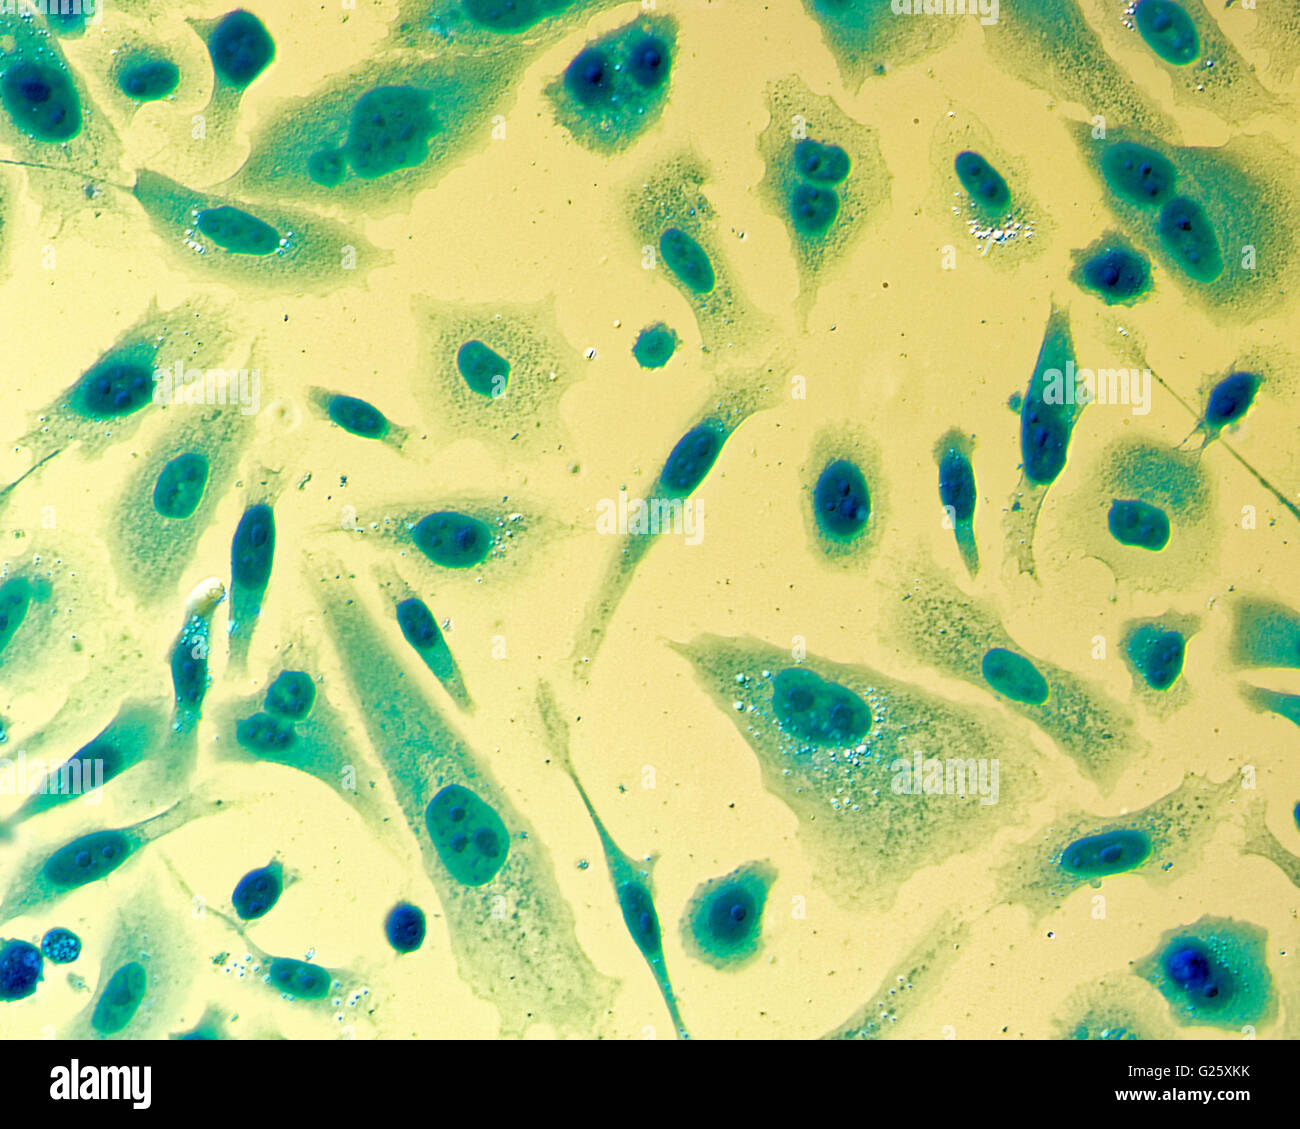 Umana PC-3 di cellule di cancro della prostata, colorati con blu Coomassie, sotto differencial interference contrast microscopio. Foto Stock